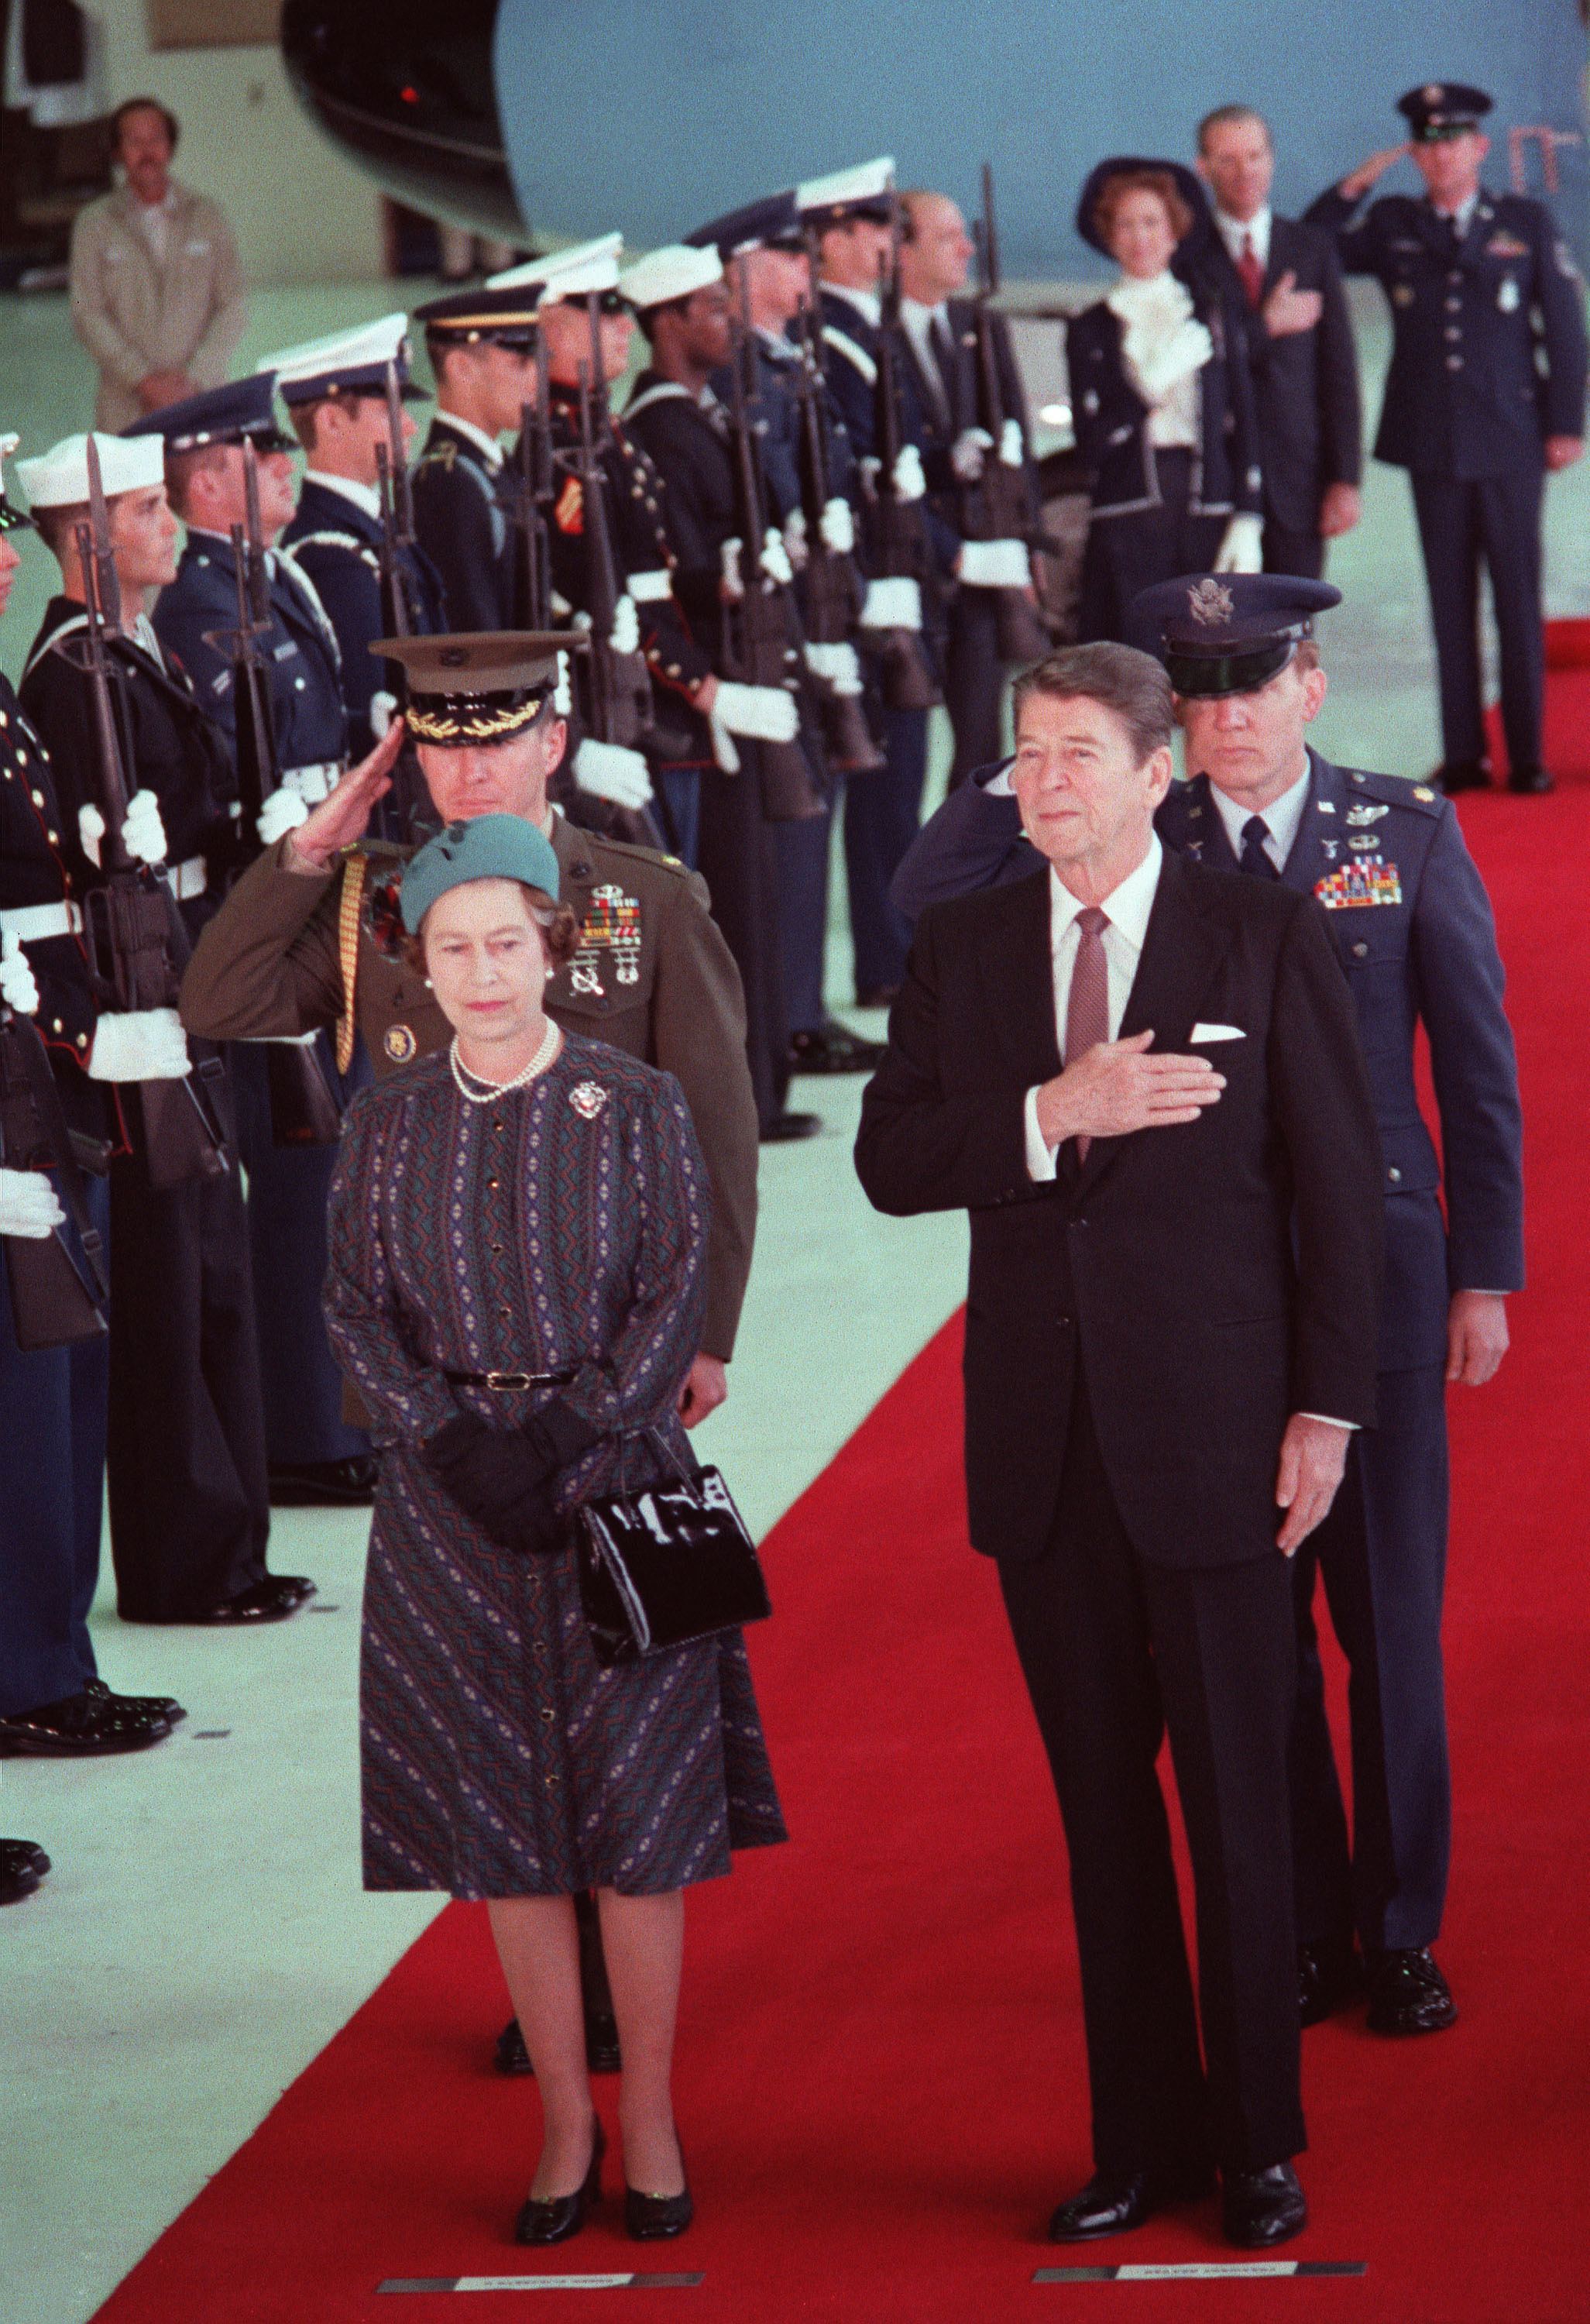 Queen Elizabeth II stands with President Ronald Reagan